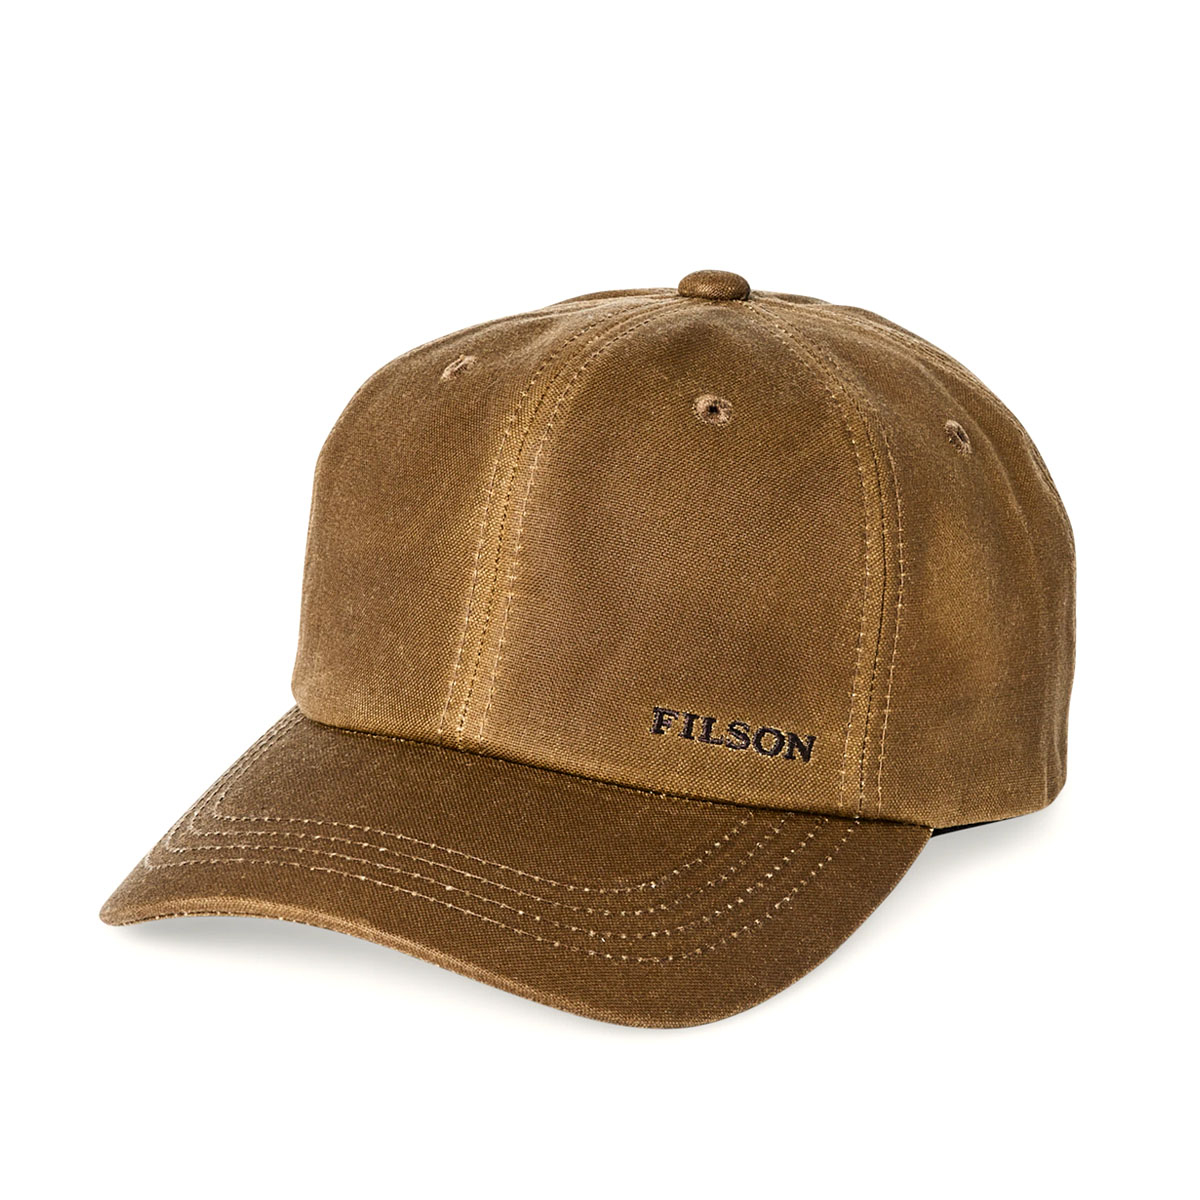 Filson Oil Tin Low-Profile Logger Cap Dark Tan, Cap Hergestellt aus widerstandsfähigem und wasserabweisendem, Tin Cloth Canvas